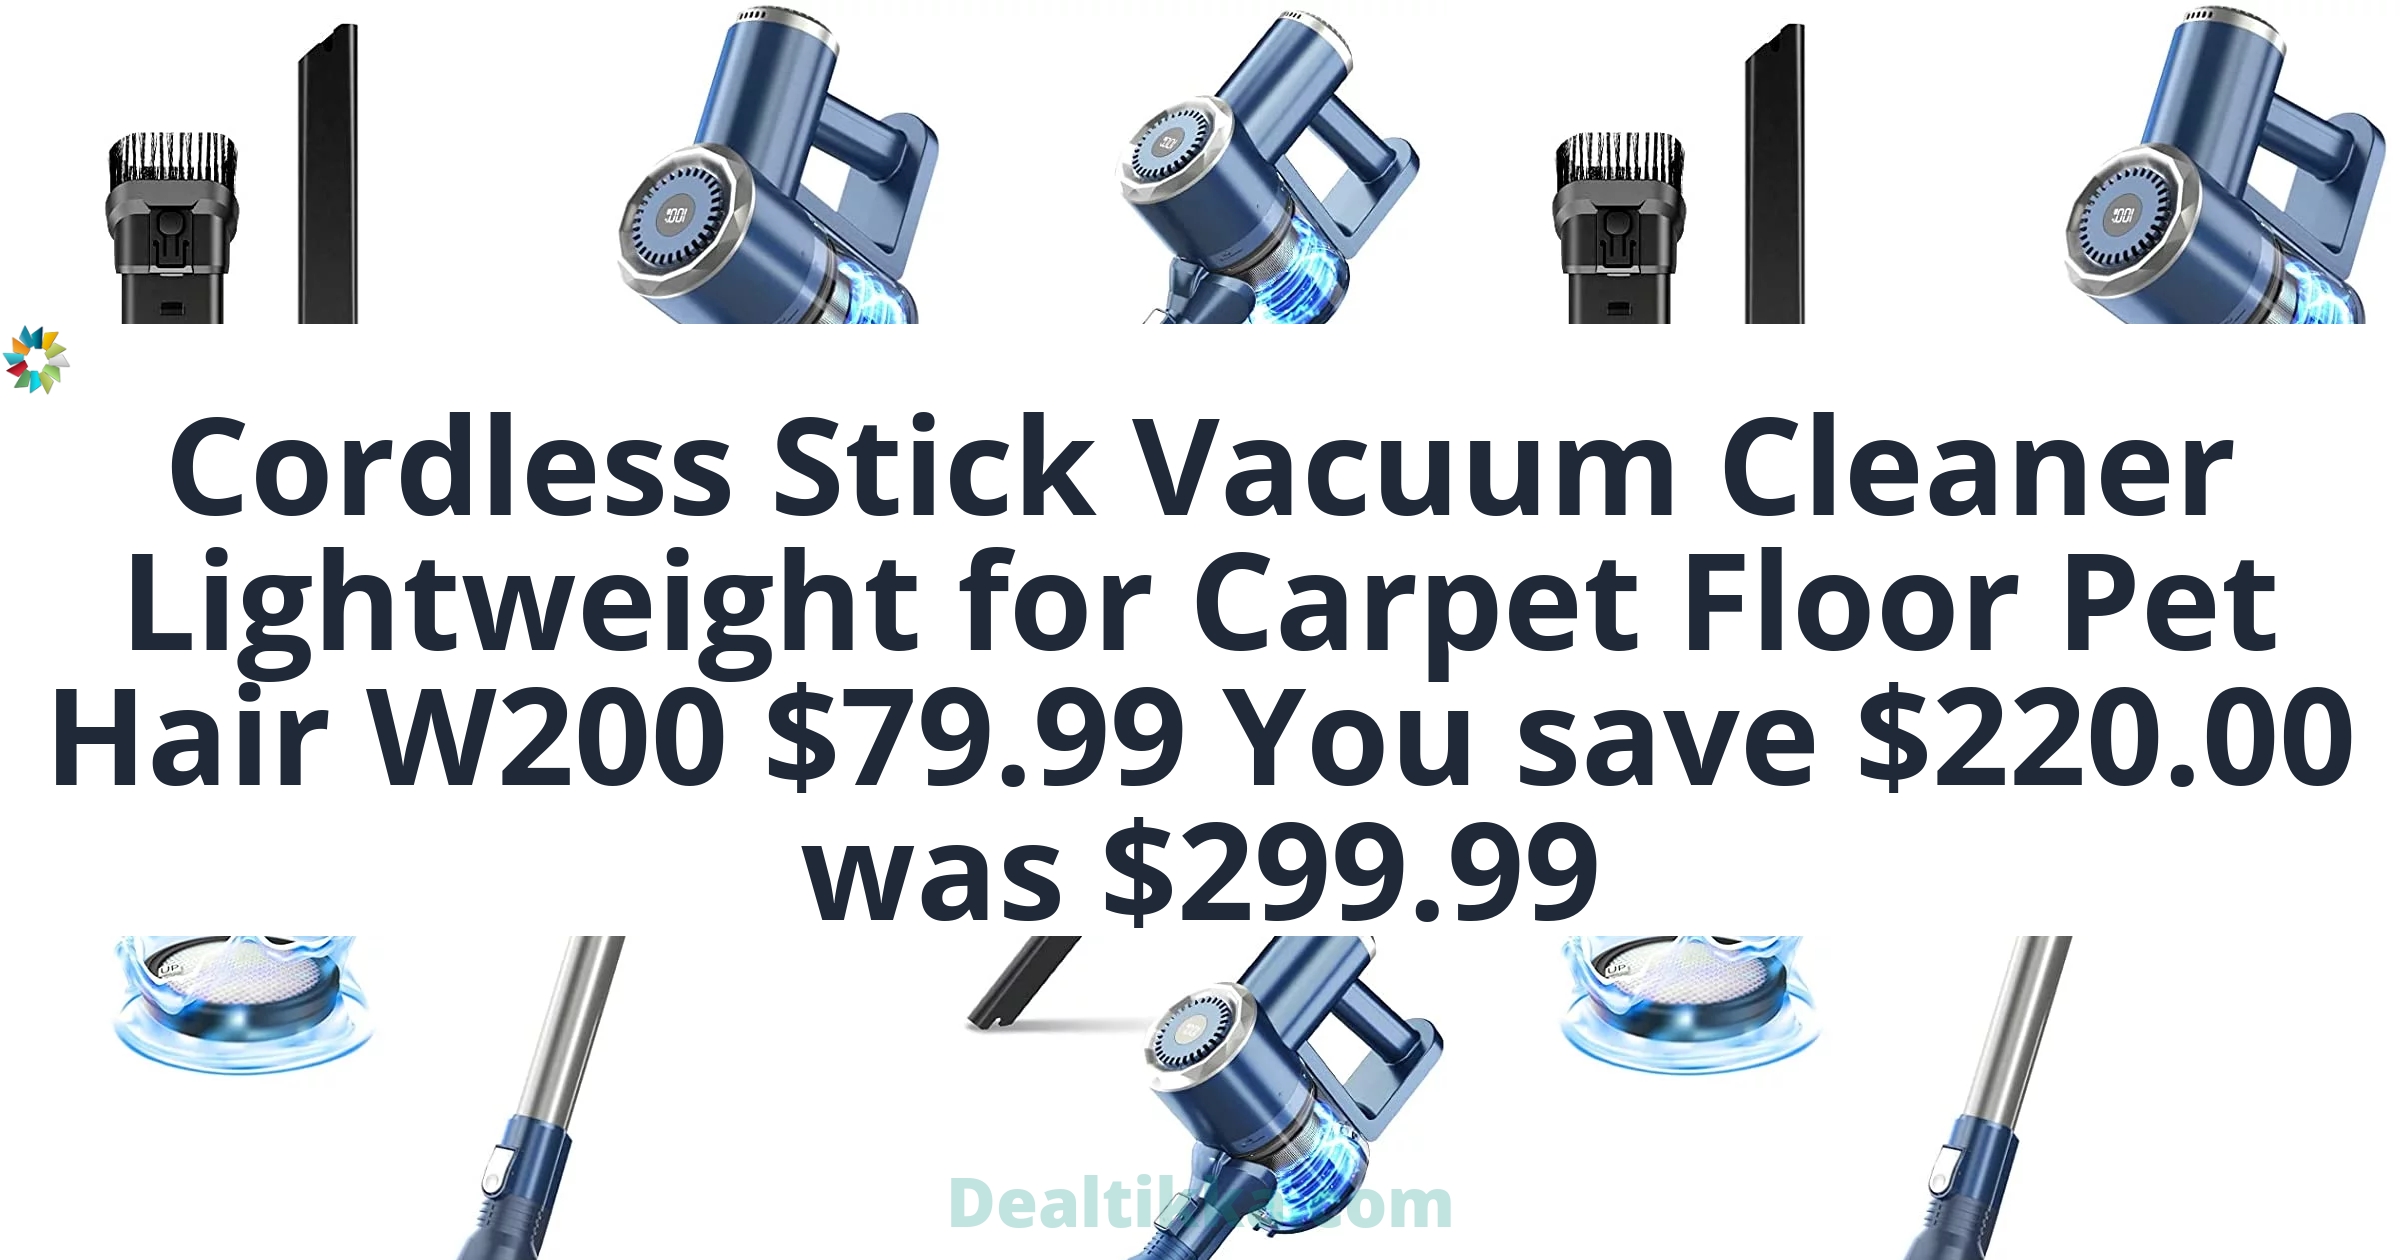 Prettycare-Cordless-Stick-Vacuum-Cleaner-Lightweight-for-Carpet-Floor-Pet-Hair-W200_f475d70c-2781-4257-9287-1d2ec3ddf191.d63de166122540a585f3a8342077ccd8.jpeg&bgTailwind=bg-blueGray-200&footer=Dealtikka.com&footerTailwind=text-teal-600%20font-black%20opacity-25%20text-3xl&containerTailwind=bg-white&t=1717382698576&refresh=1